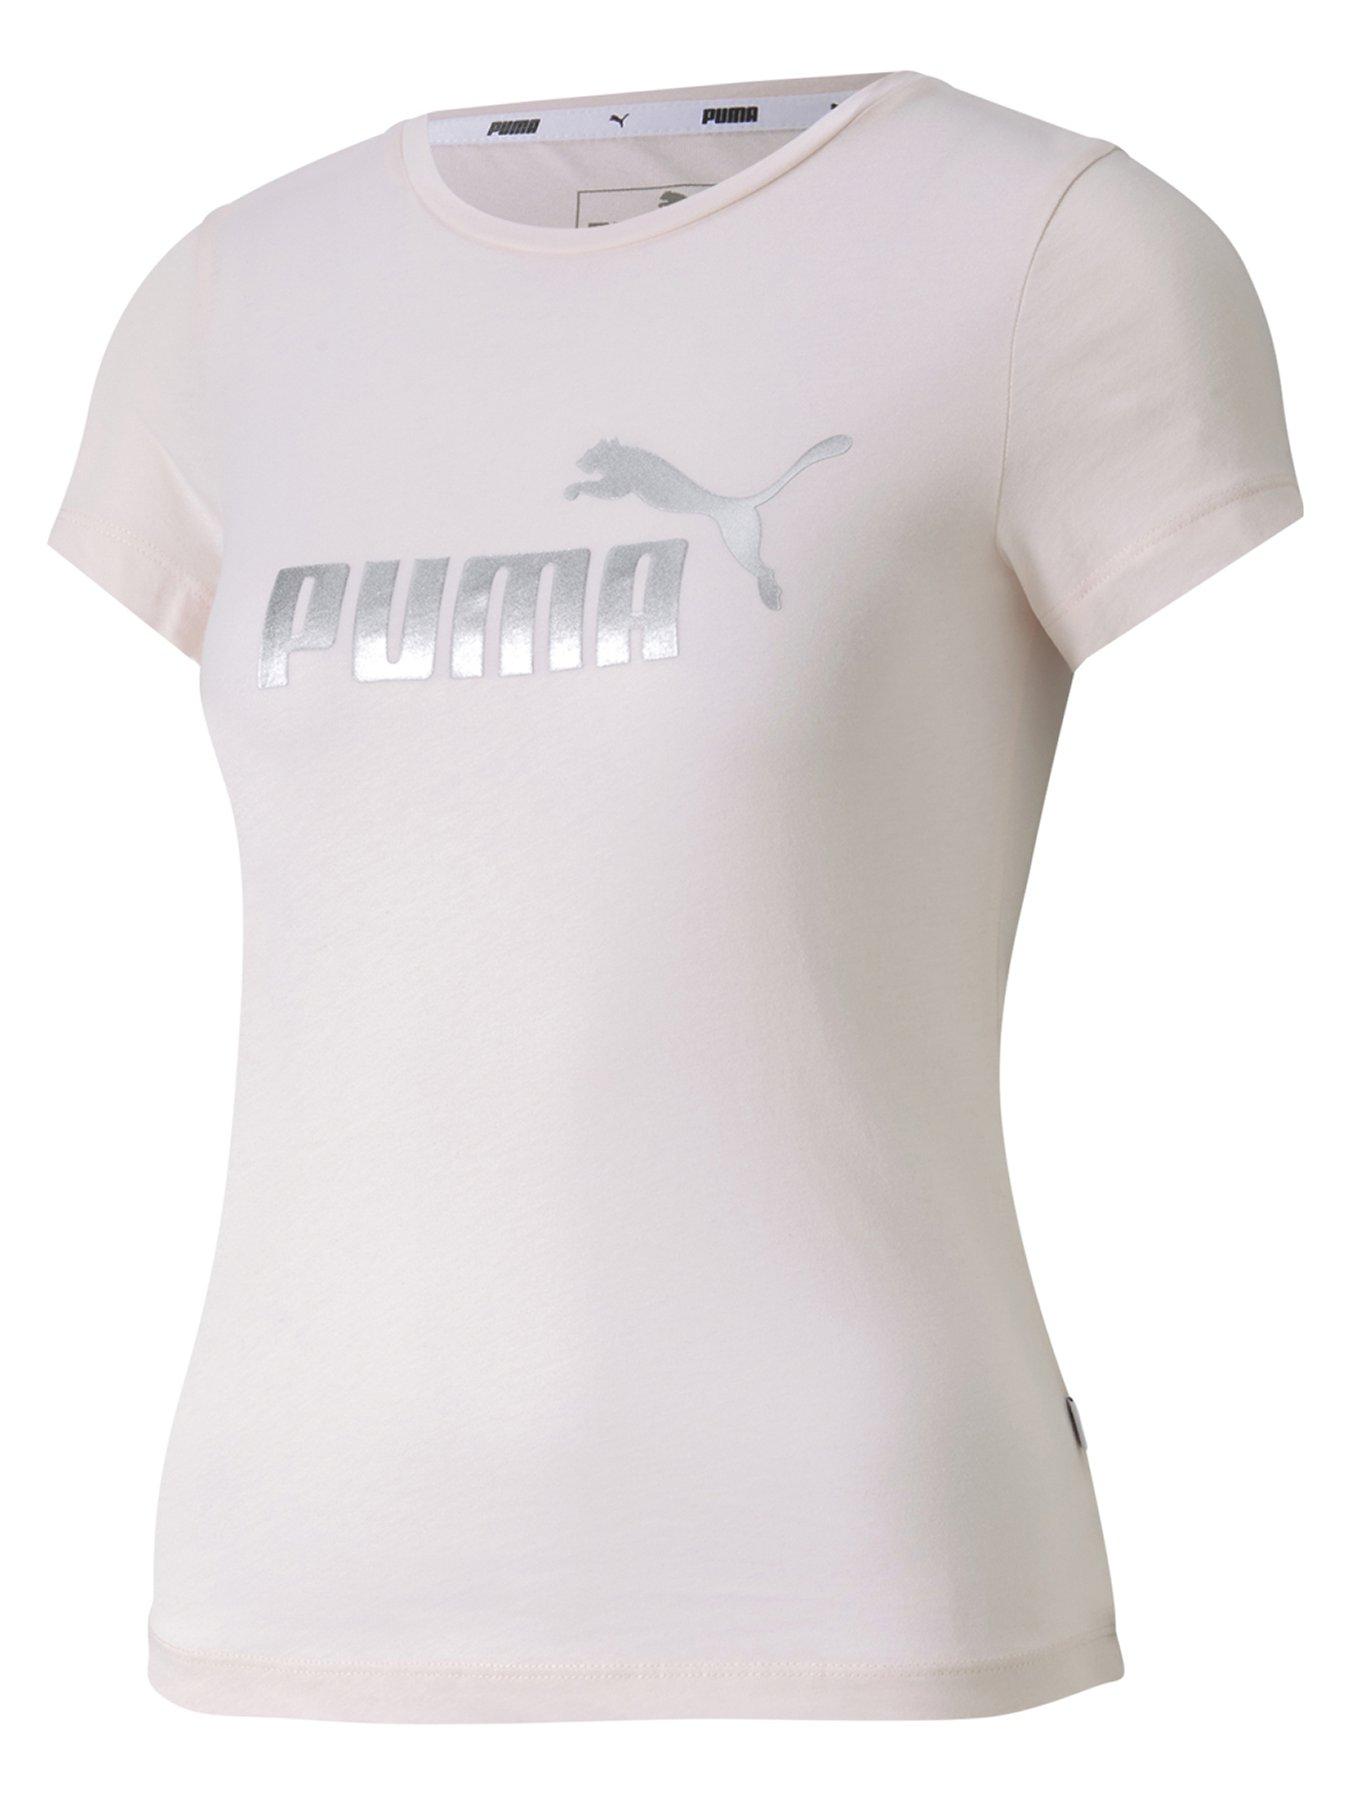 puma fitness t shirt